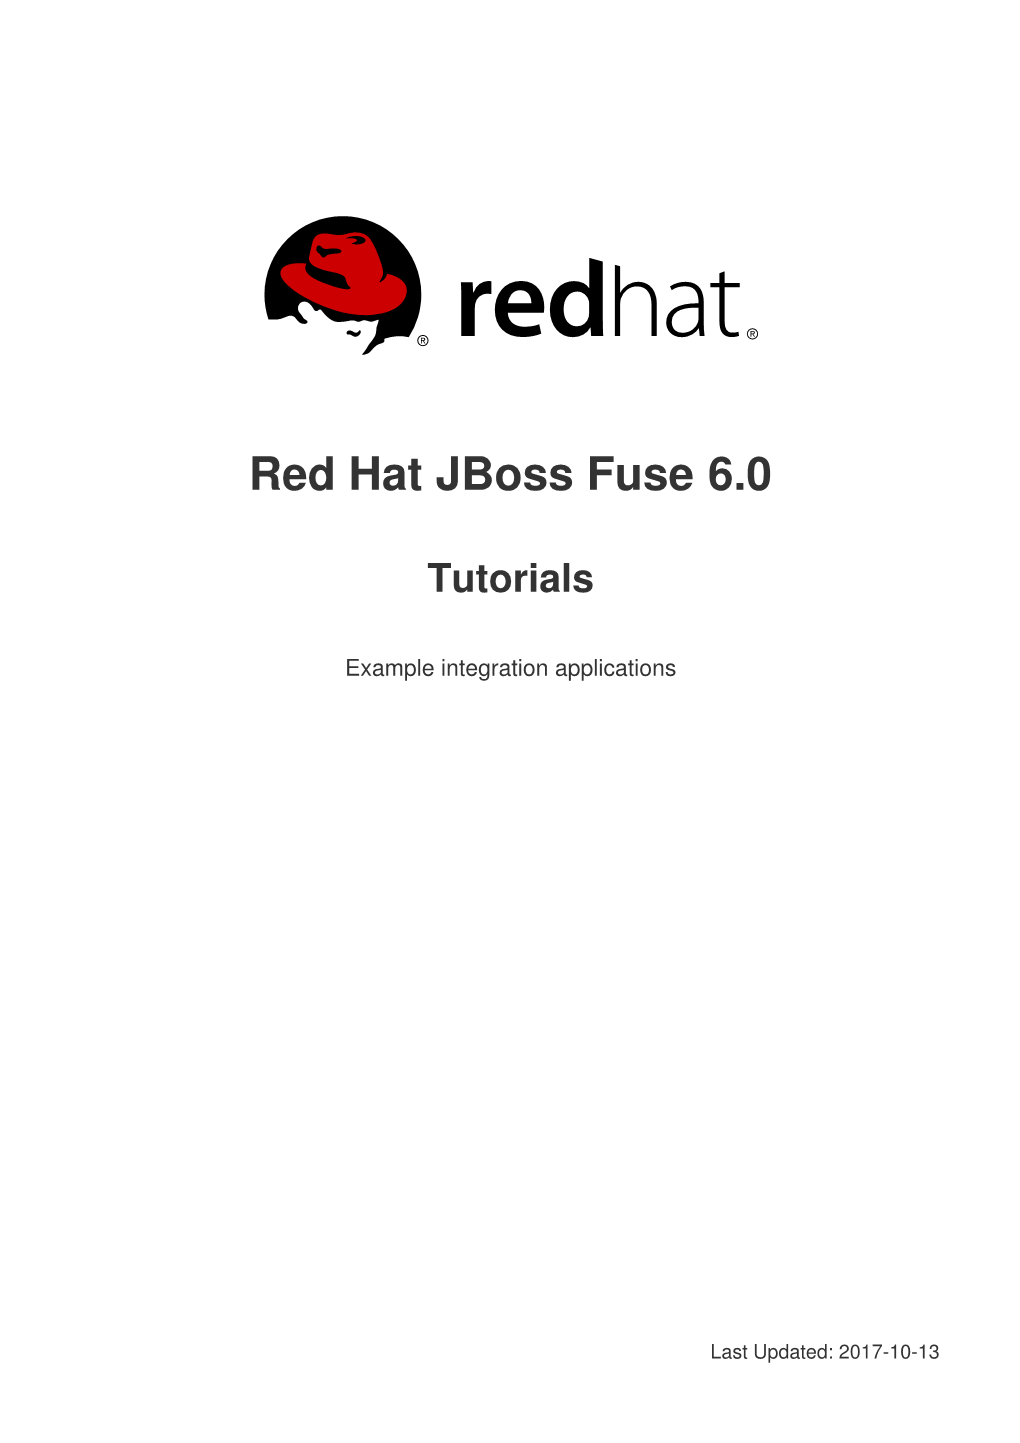 Red Hat Jboss Fuse 6.0 Tutorials